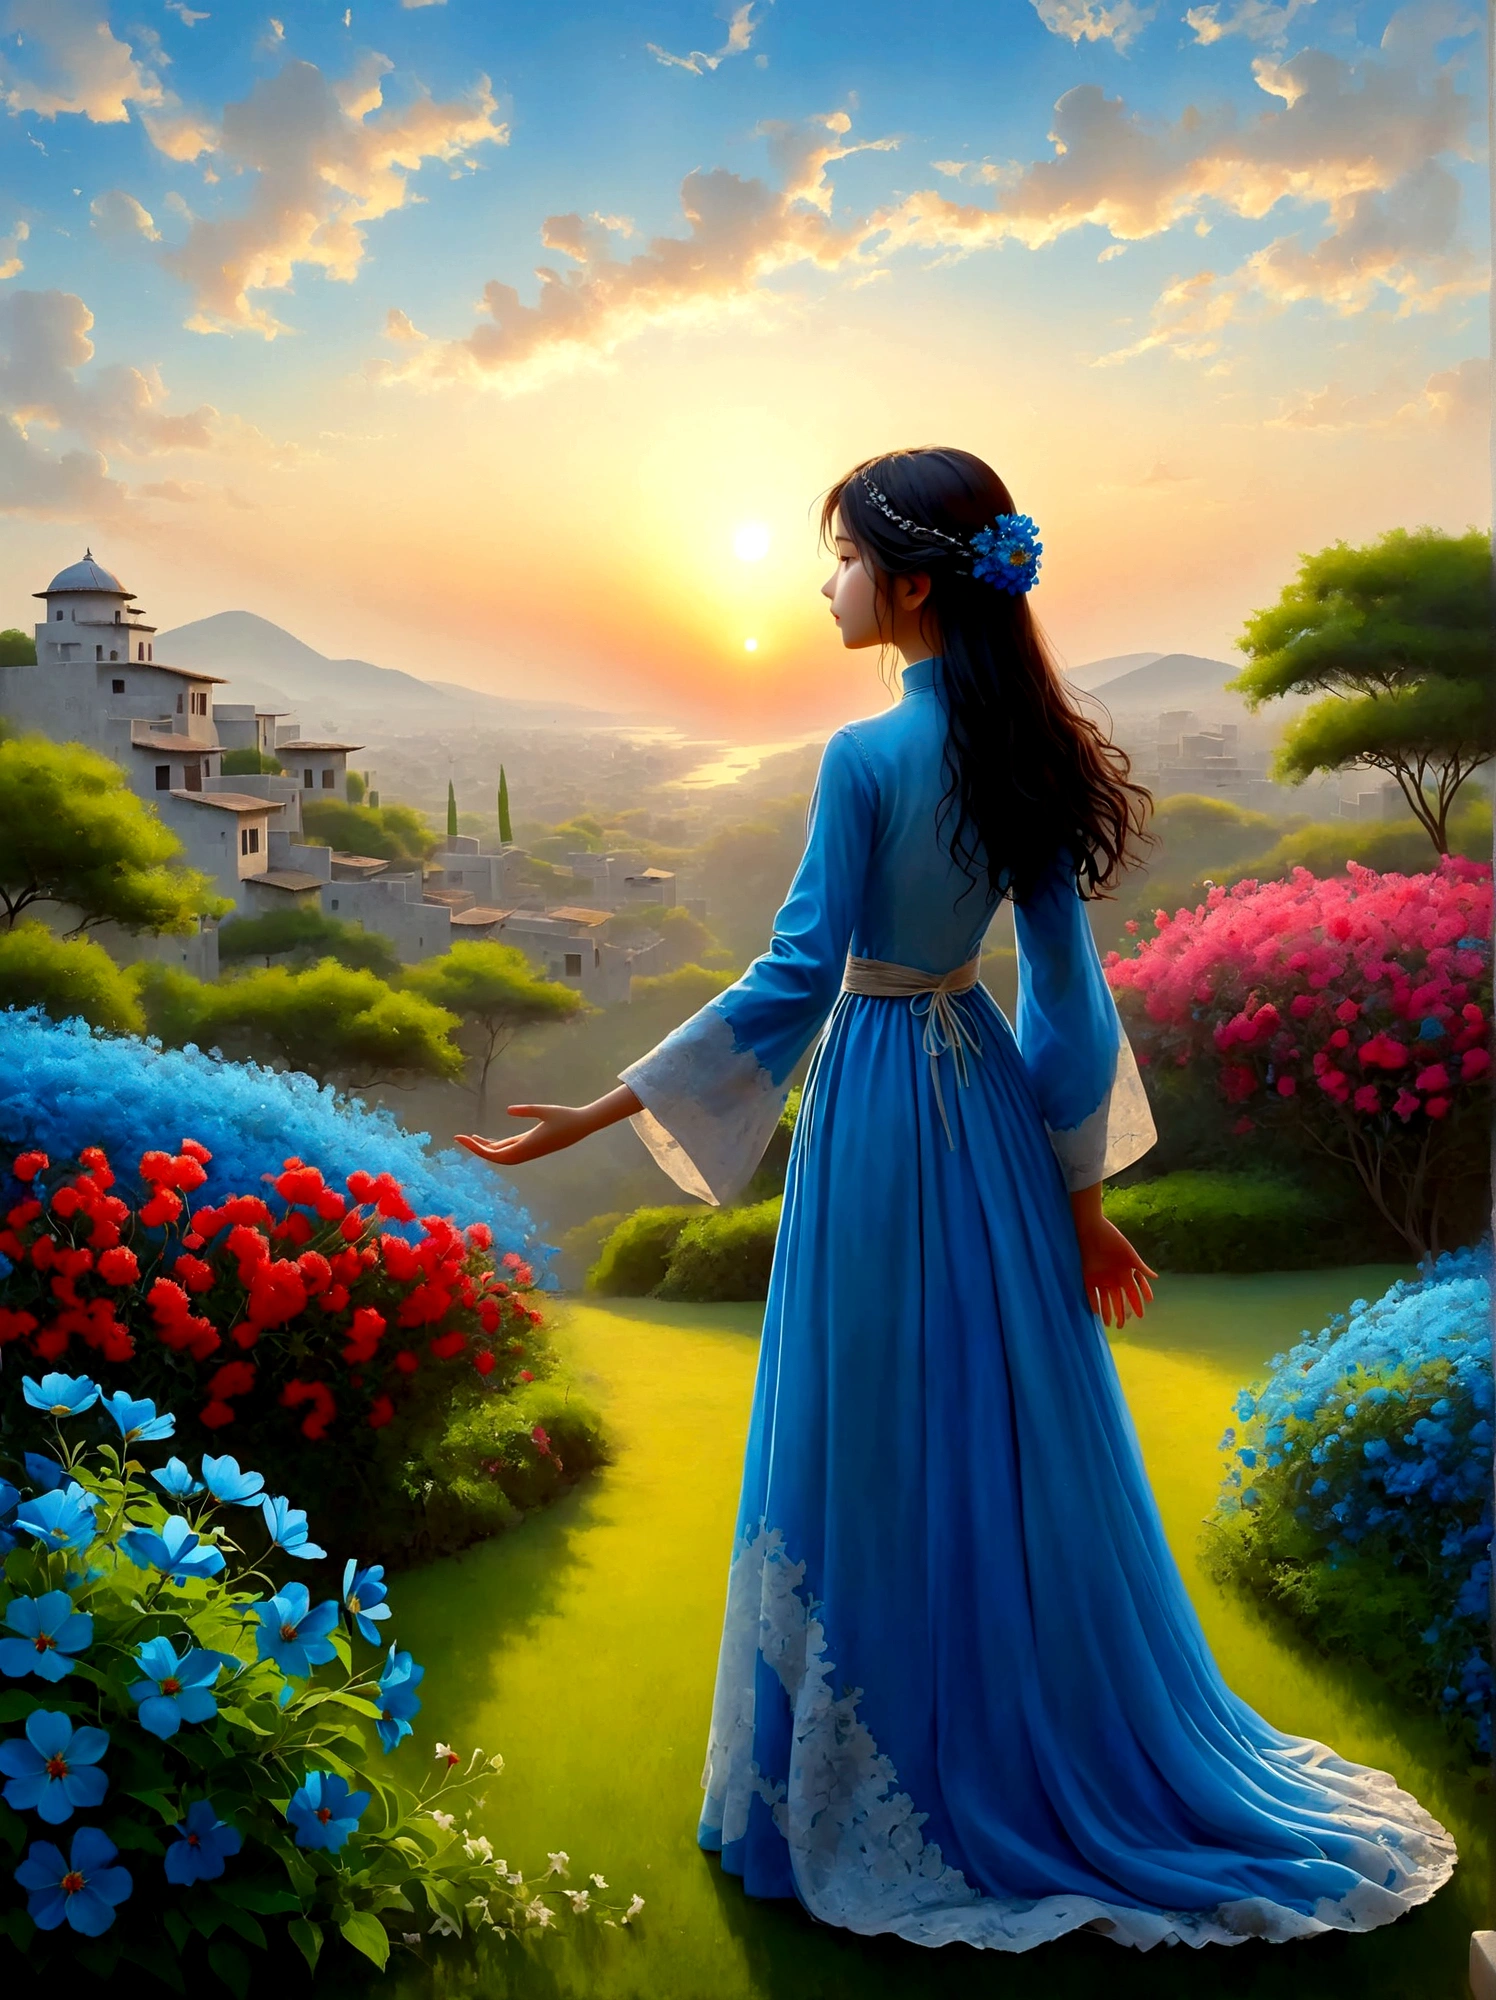 (เวลาพระอาทิตย์ขึ้นยามเช้า:1.6)，ในสวนอันหอมกรุ่น, สาวตาบอดยืนอยู่ตรงนั้น，เปิดแขนของคุณ, สัมผัสกลีบดอกไม้ที่เธอพบอย่างอ่อนโยน, เชื่อมต่อกับธรรมชาติและดอกไม้สีฟ้าแสนหวาน, แต่ละคนยืนสูงด้วยความตกตะลึงและสงสัยภายใต้ท้องฟ้าอันกว้างใหญ่, ภาพเงาของพวกเขาตัดกันโดยสิ้นเชิงกับแสงยามเช้าที่มีสีสันสดใส, พวกเขาอยู่ในสภาวะคิดใคร่ครวญอย่างลึกซึ้ง, บรรยากาศอันเงียบสงบรอบตัวพวกเขาบ่งบอกถึงความเงียบสงบและความสันโดษ, มุมมองจากมุมมองมุมกว้างเน้นขอบเขตอันกว้างใหญ่ของภูมิทัศน์ที่น่าทึ่งซึ่งเต็มไปด้วยองค์ประกอบทางธรรมชาติ, รูปภาพควรทำให้เกิดอารมณ์ดราม่าและยิ่งใหญ่ด้วยการใช้แสงและเงาอย่างมีประสิทธิภาพ.